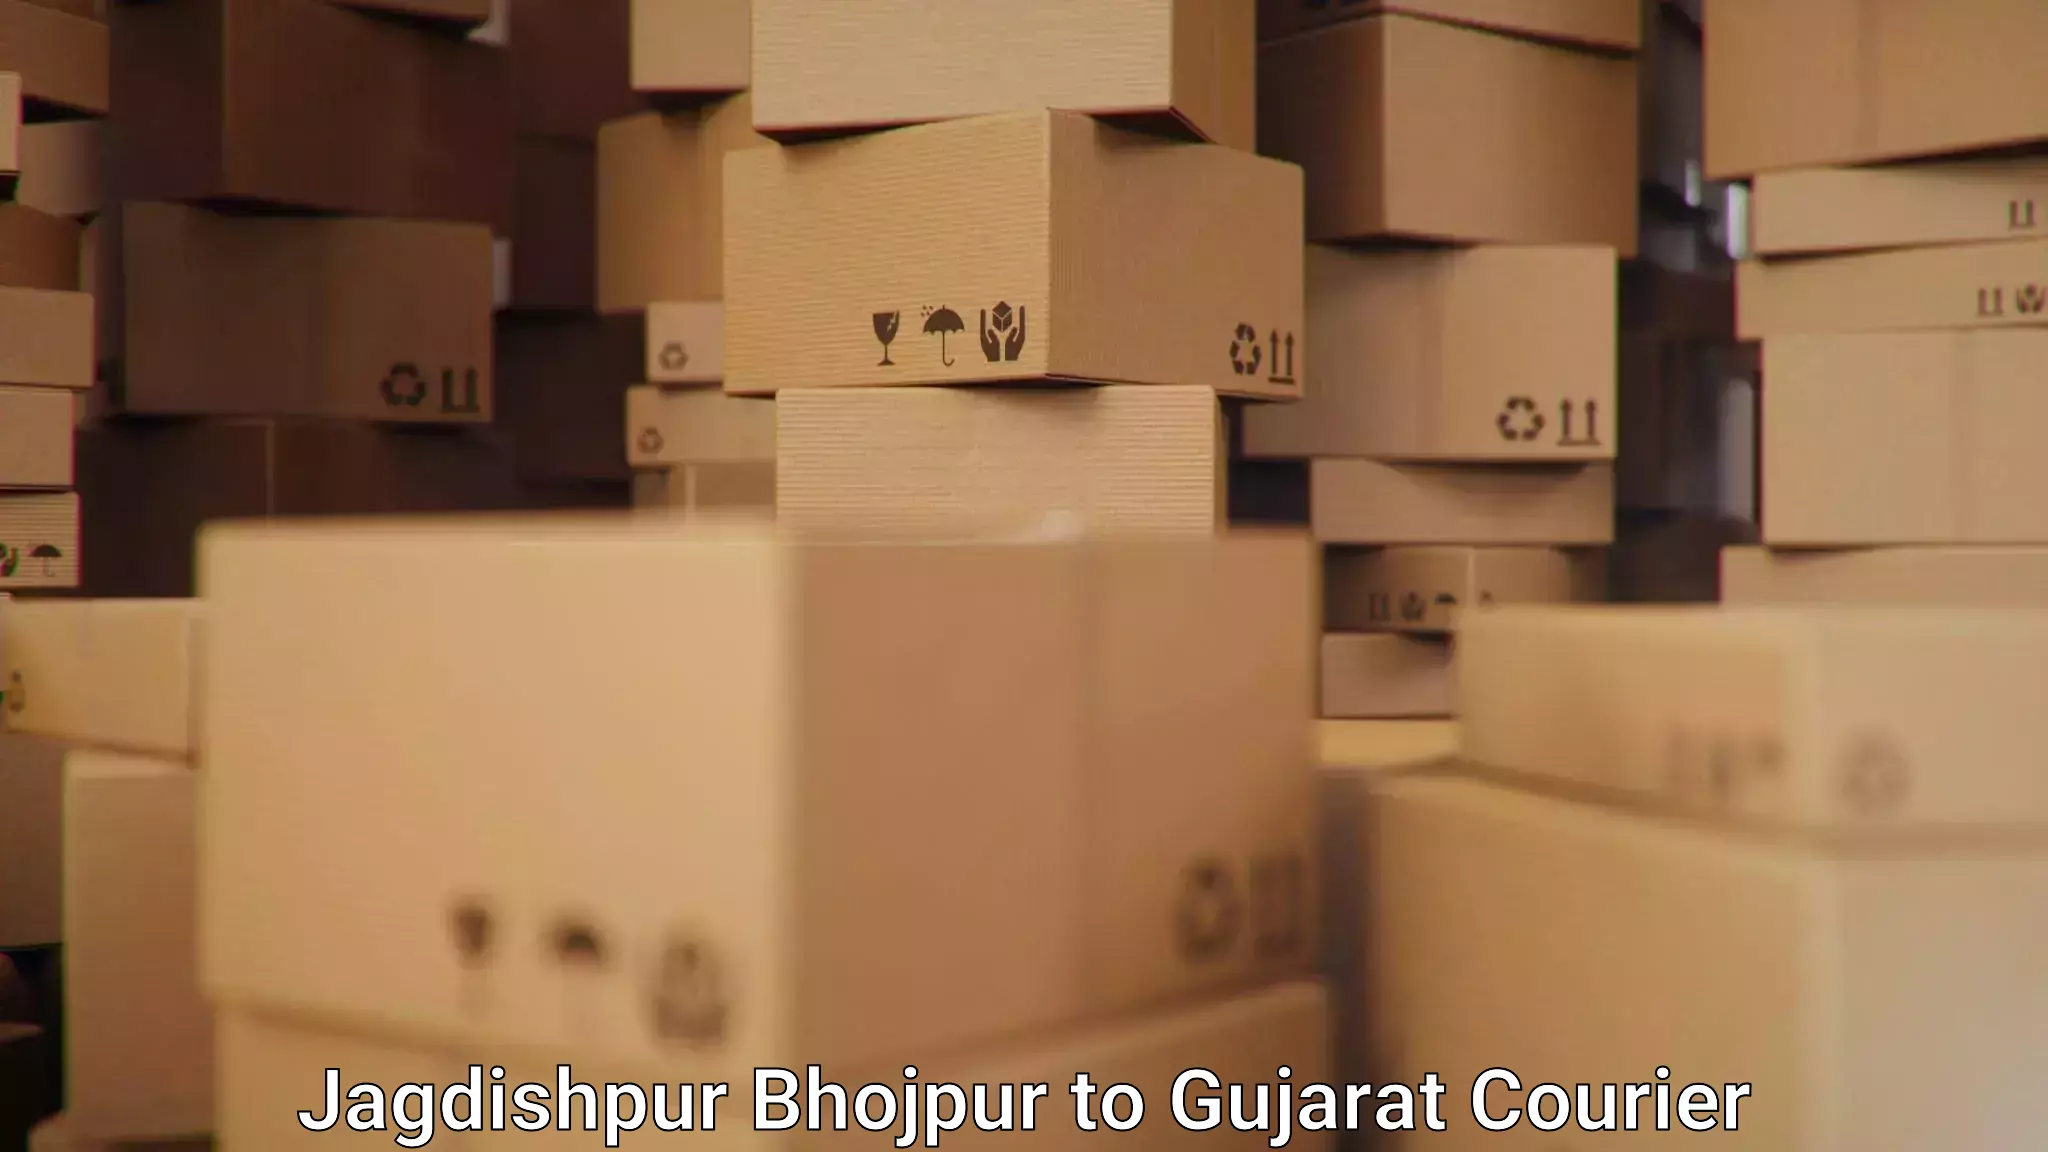 Quick dispatch service Jagdishpur Bhojpur to Bharuch